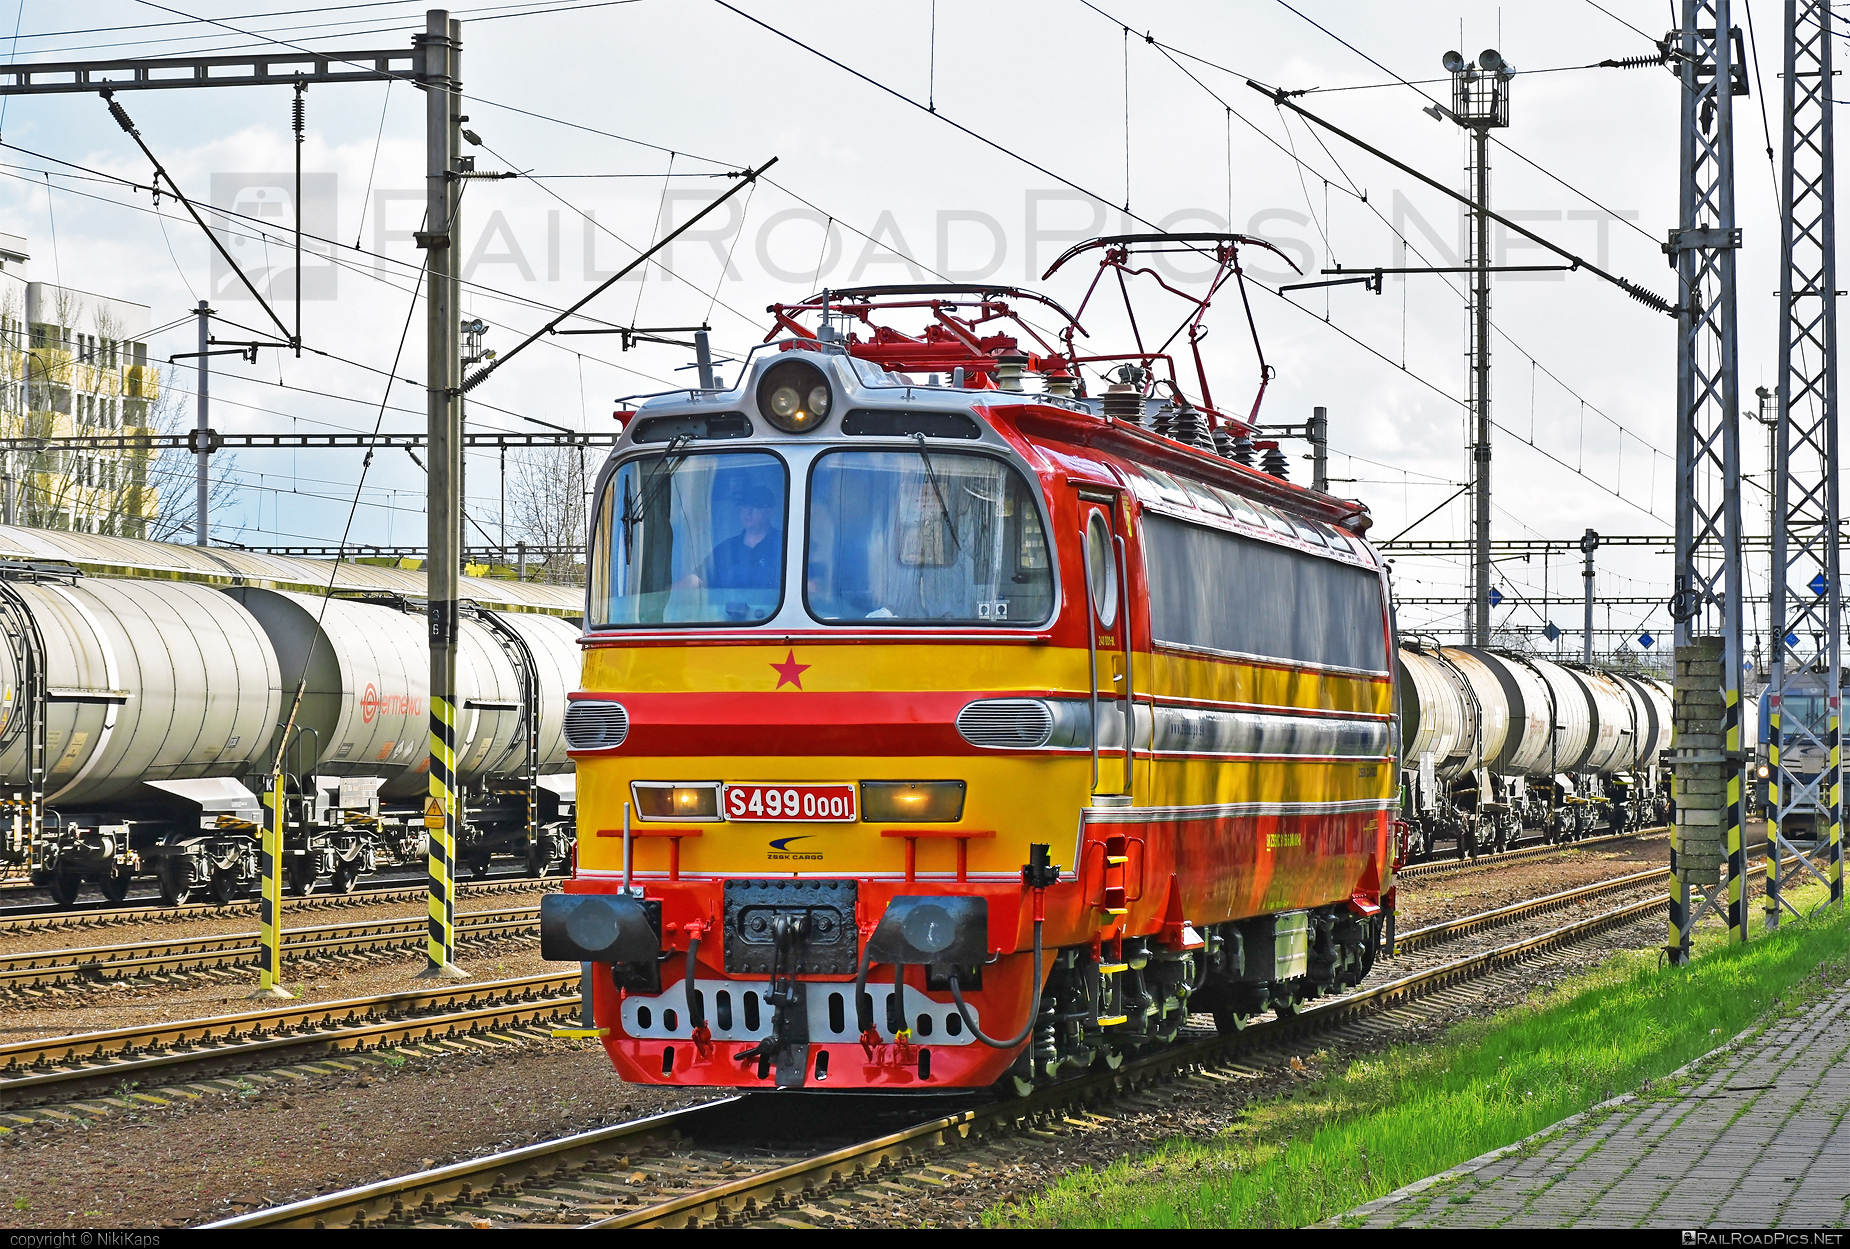 Škoda 47E - S4990001 operated by Železničná Spoločnost' Cargo Slovakia a.s. #ZeleznicnaSpolocnostCargoSlovakia #ZeleznicnaSpolocnostSlovensko #laminatka #locomotive240 #skoda #skoda47e #zssk #zsskcargo